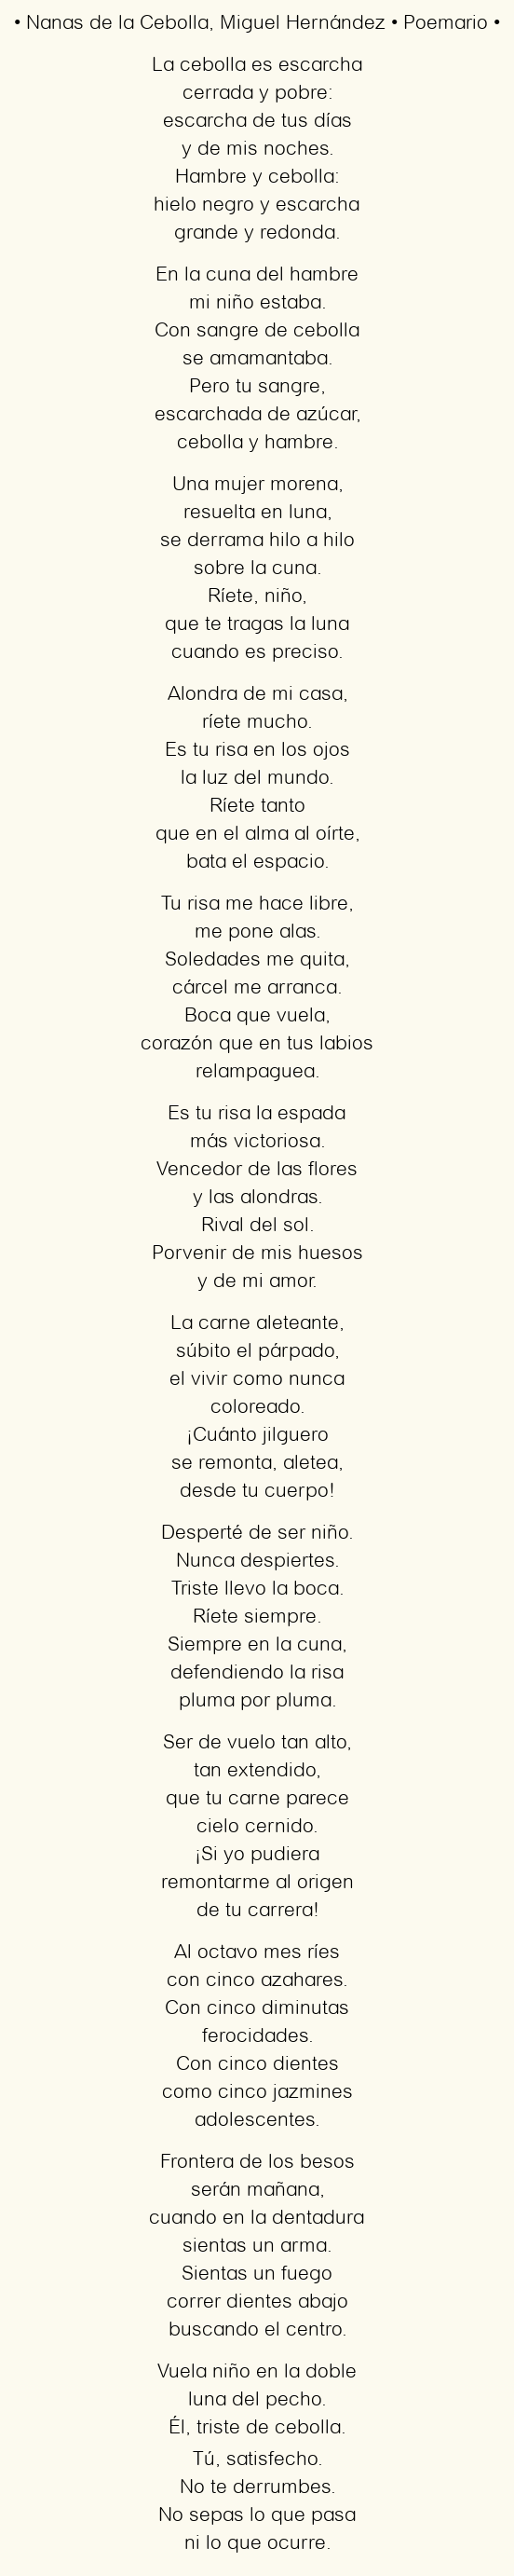 Imagen con el poema Nanas de la cebolla, por Miguel Hernández